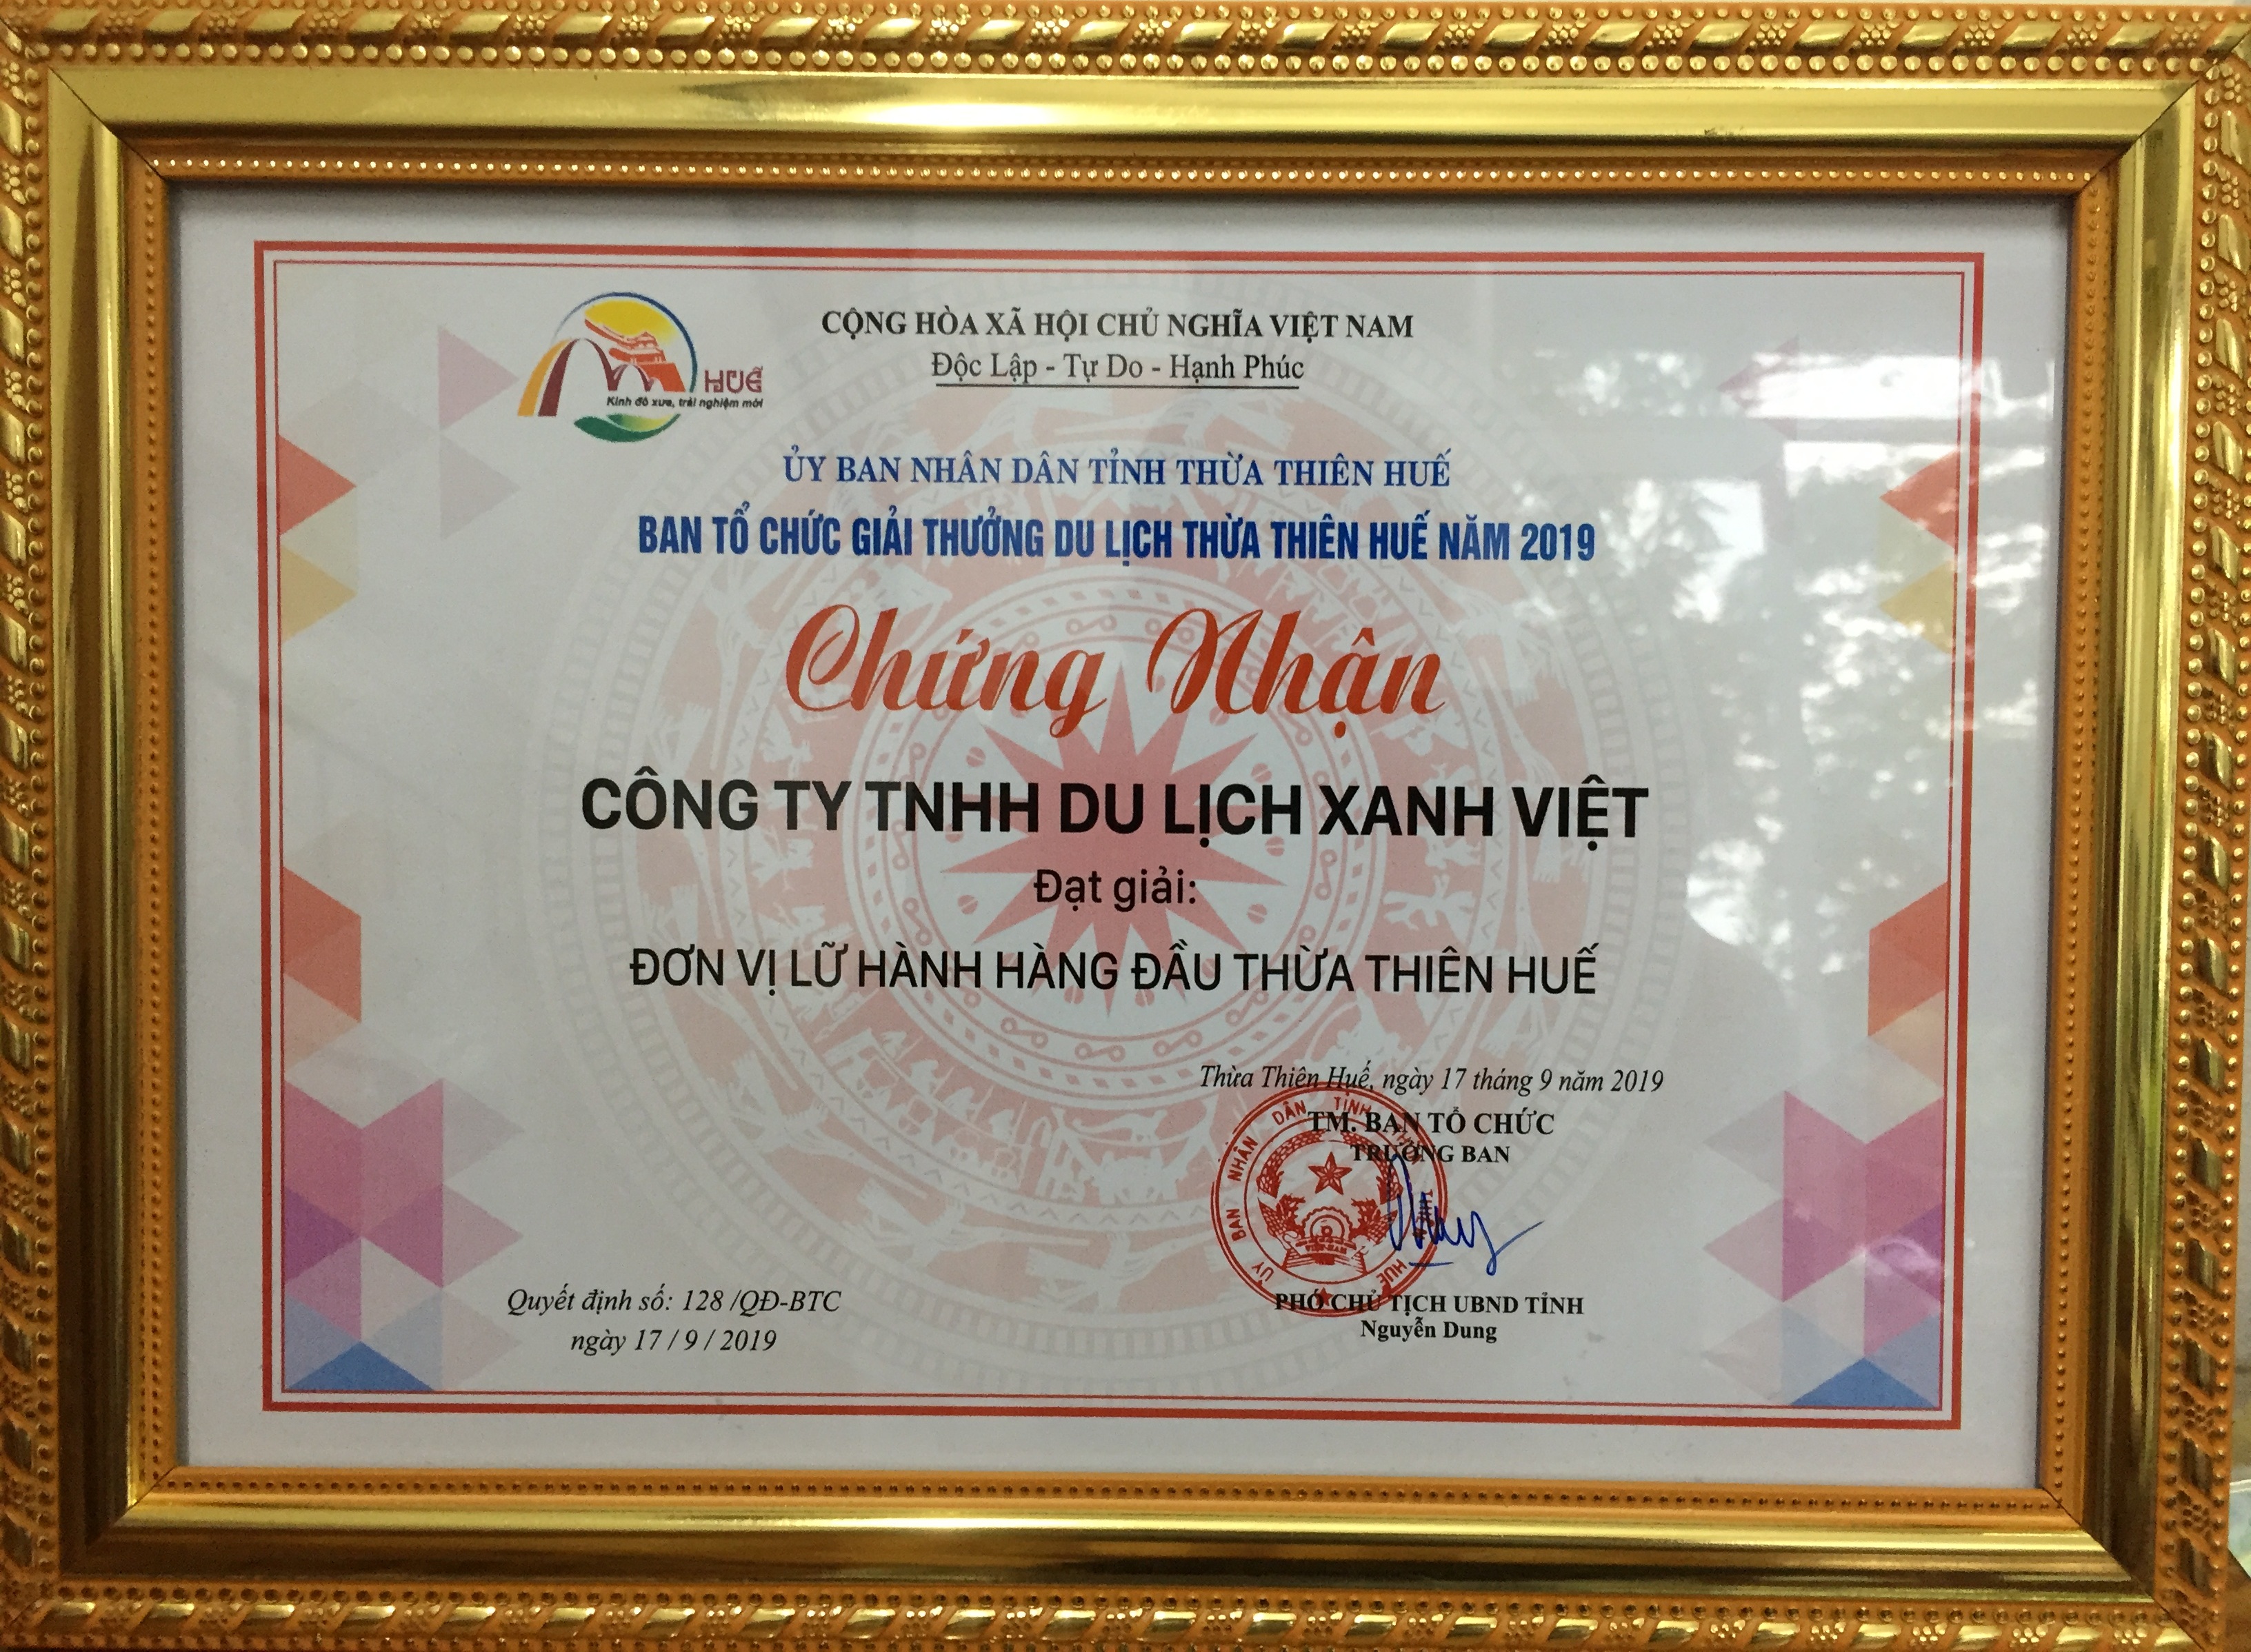 UBND Tỉnh Thừa Thiên Huế